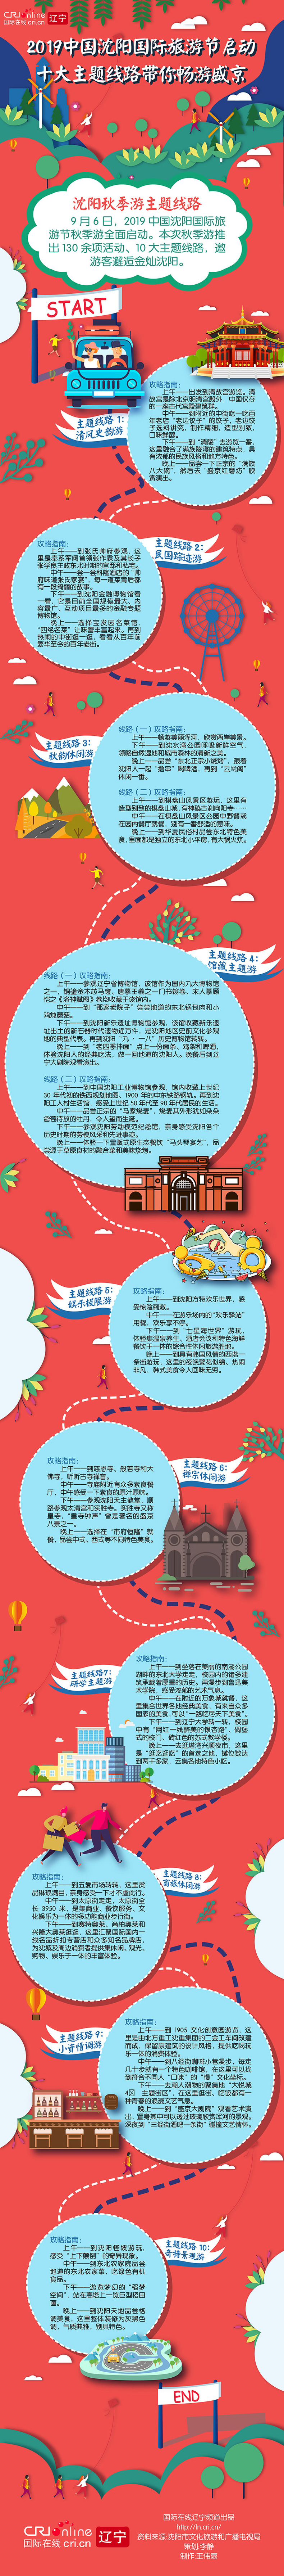 2019中國瀋陽國際旅遊節啟動 十大主題線路暢遊美好盛京